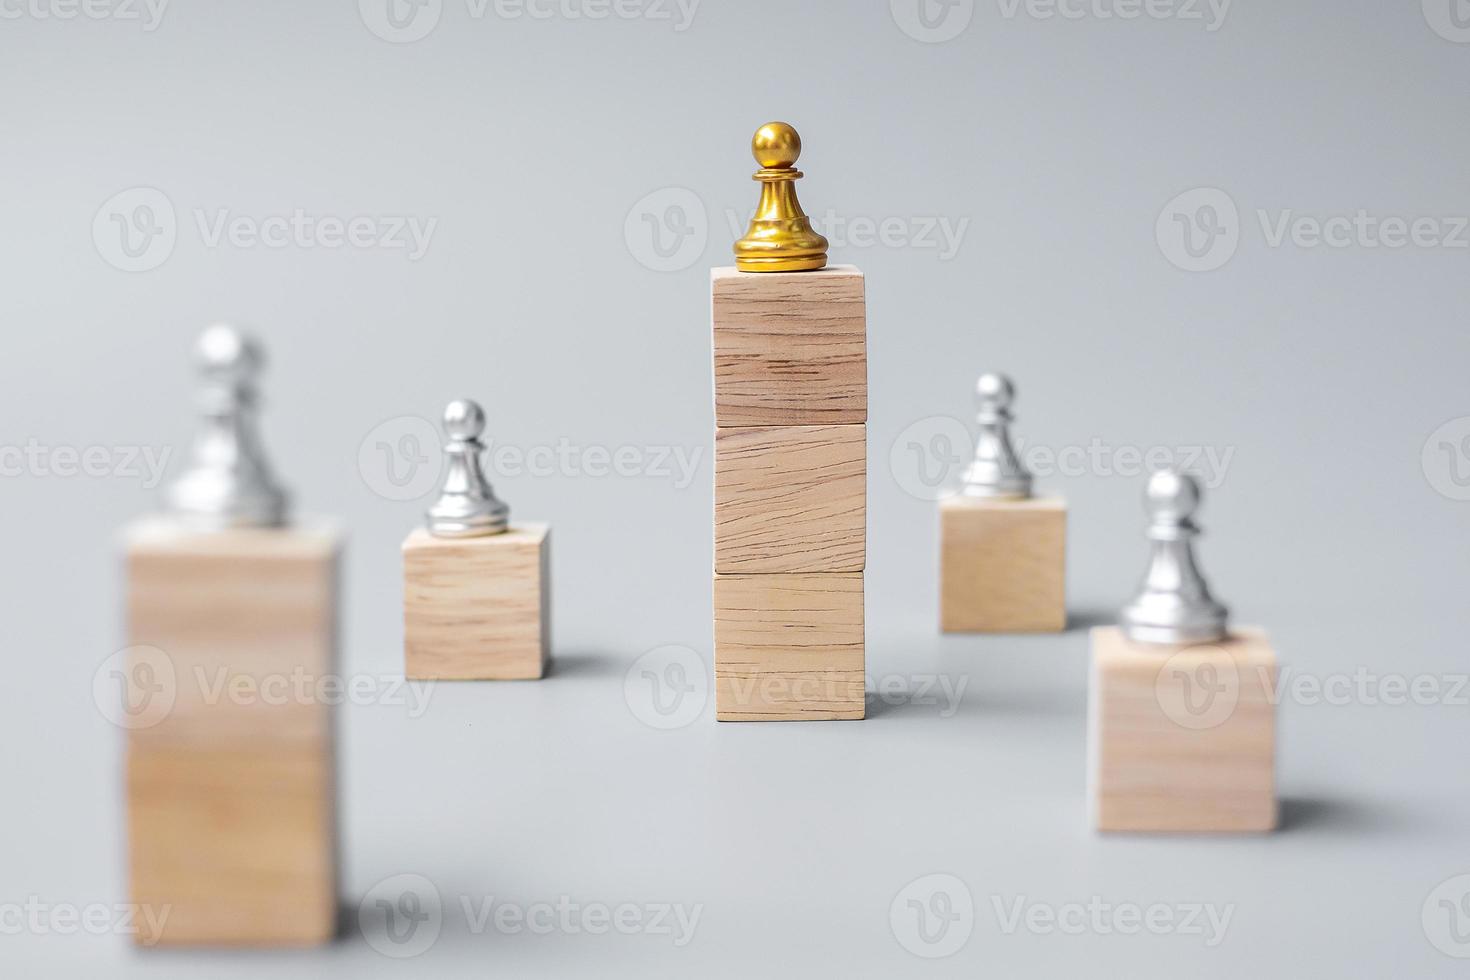 top van gouden schaak pion stukken of leider zakenman. overwinning, leiderschap, zakelijk succes, team, werving en teamwork concept foto